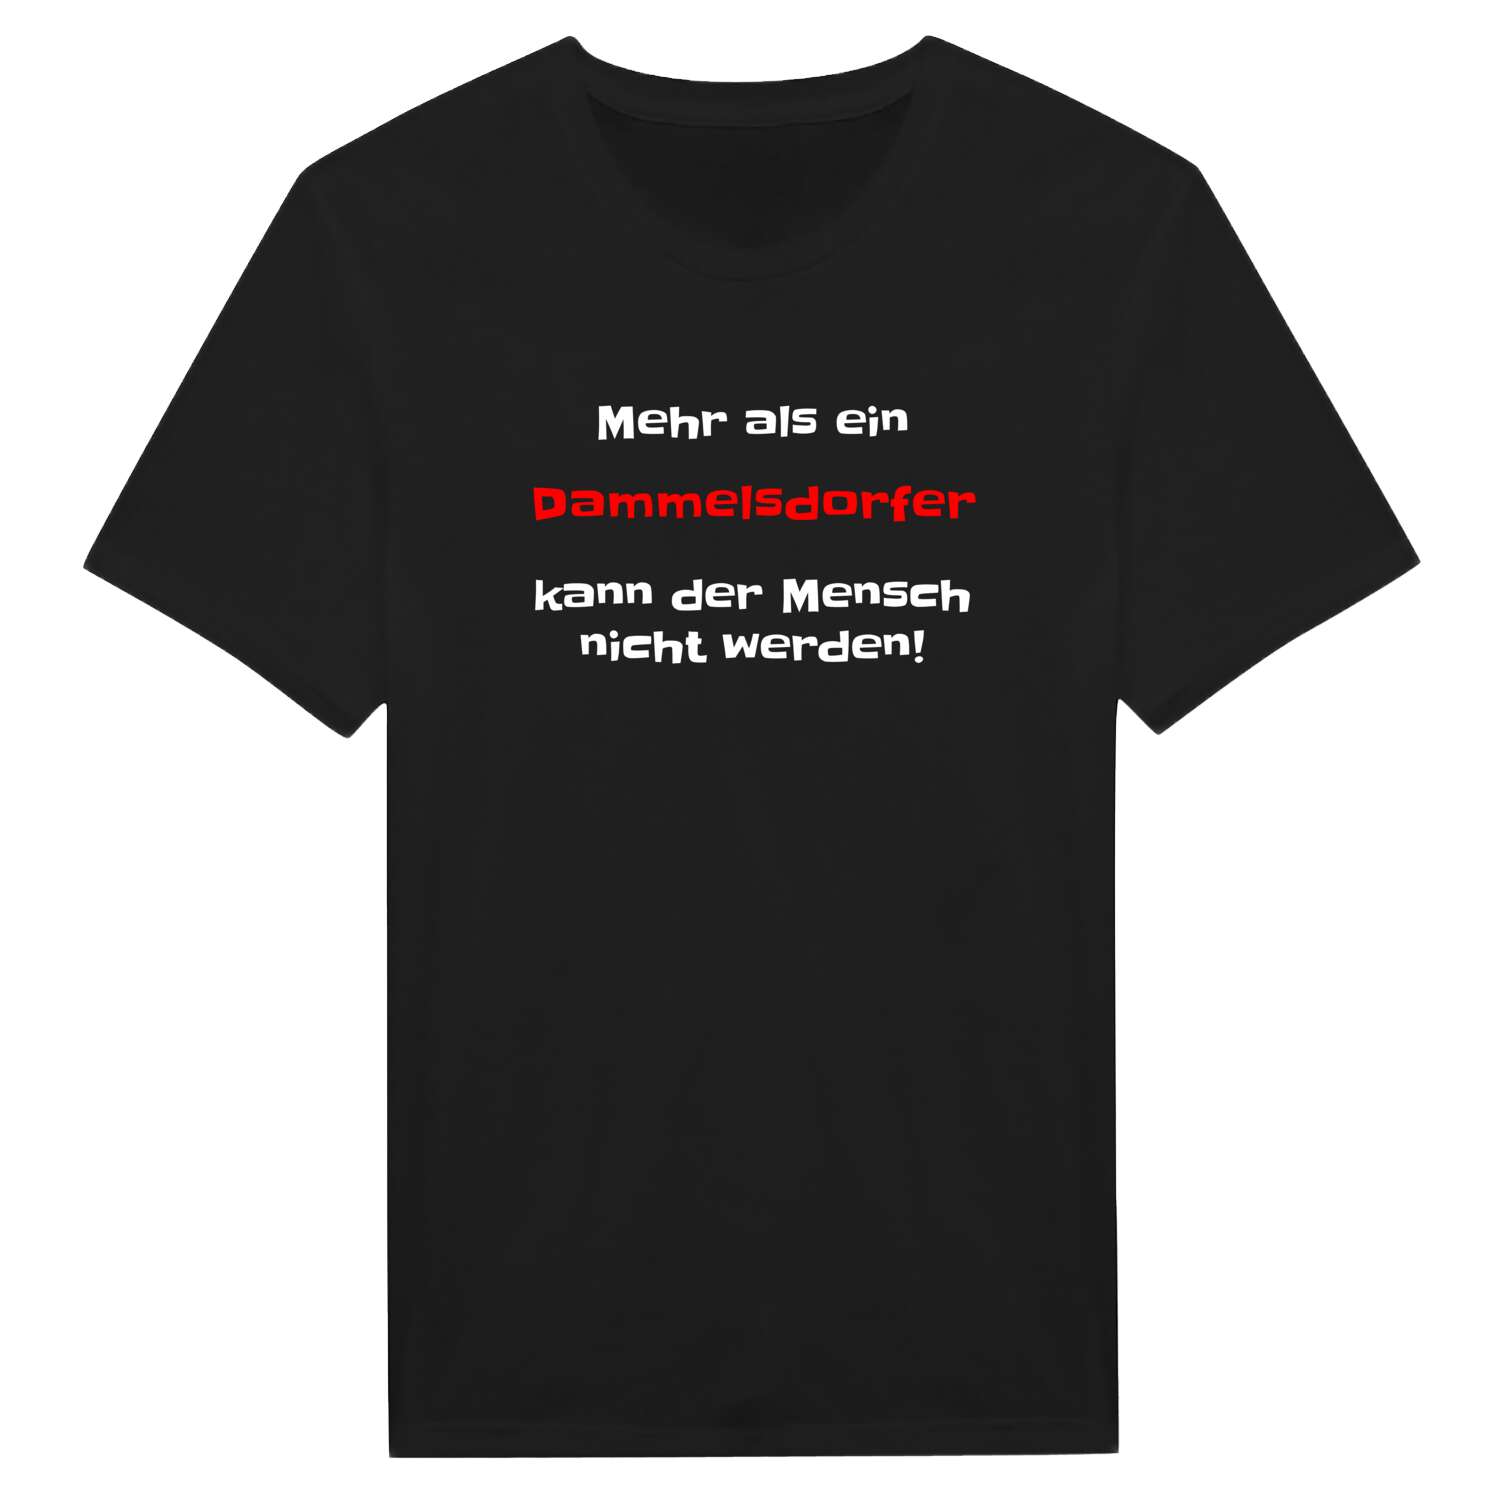 Dammelsdorf T-Shirt »Mehr als ein«